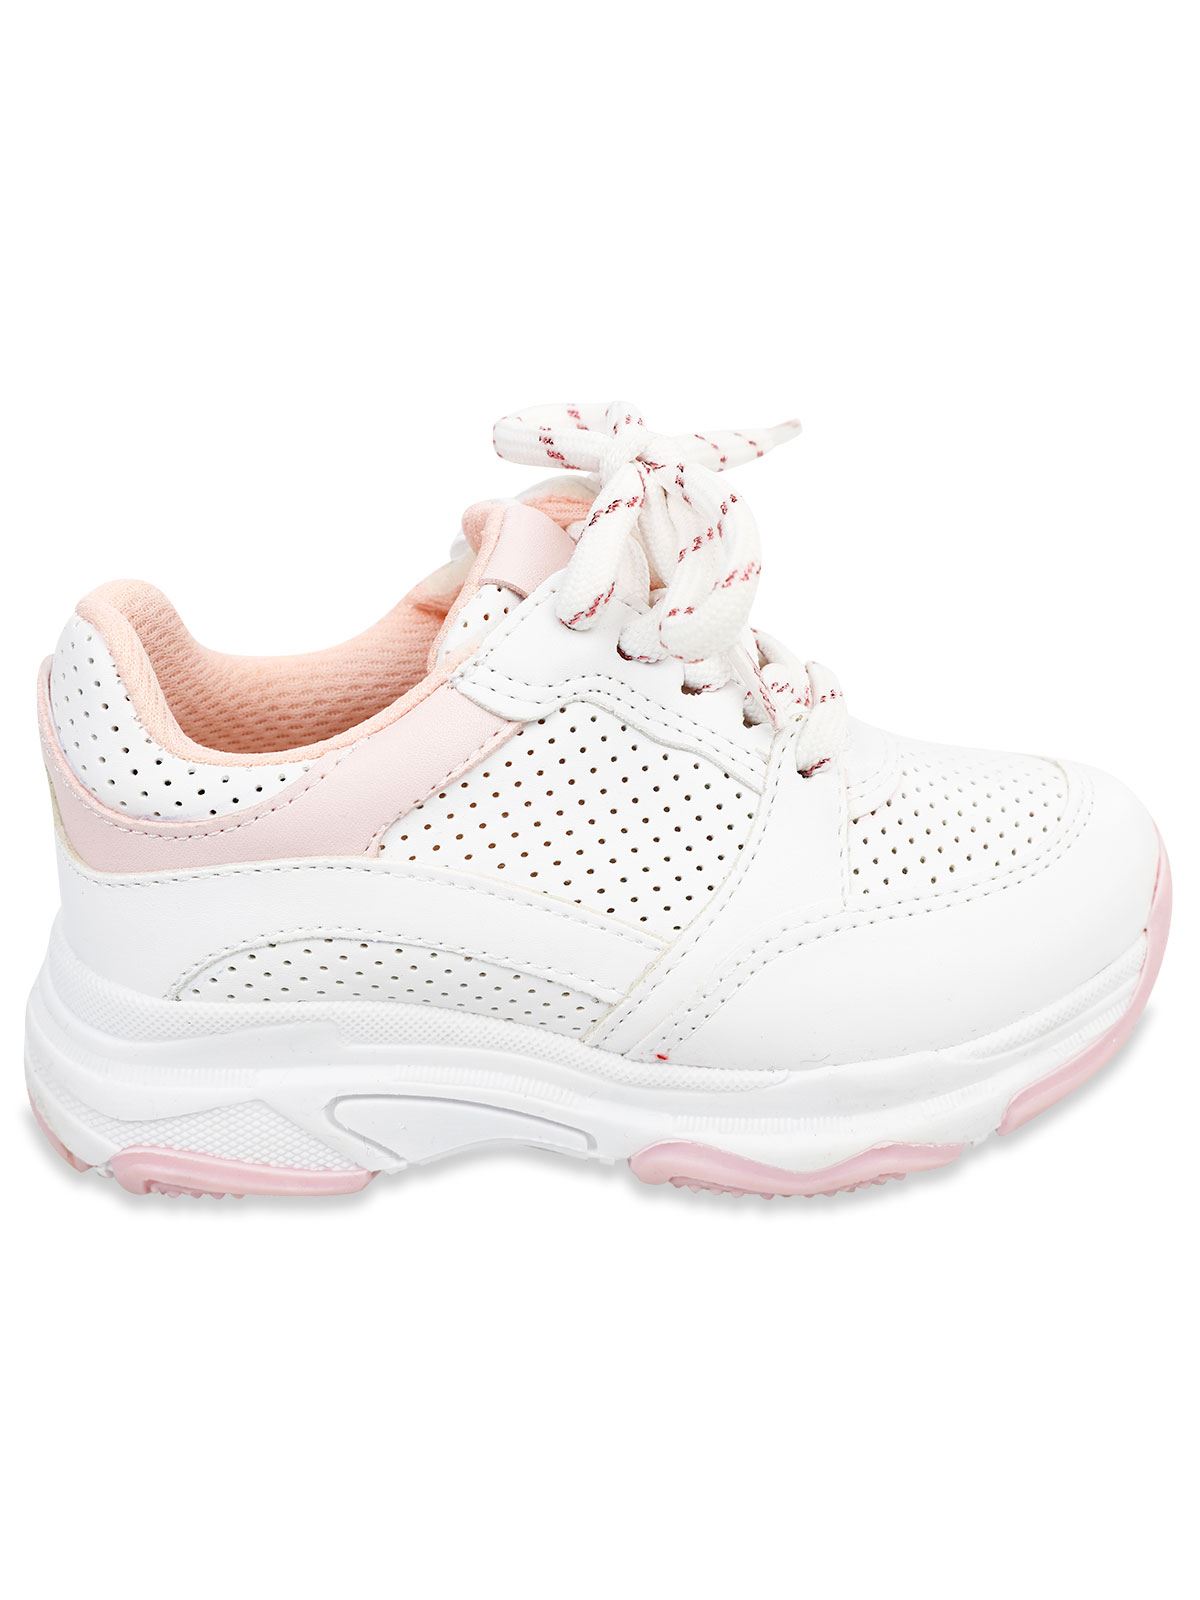 Harli Kız Çocuk Spor Ayakkabı 31-35 Numara Beyaz-Pudra